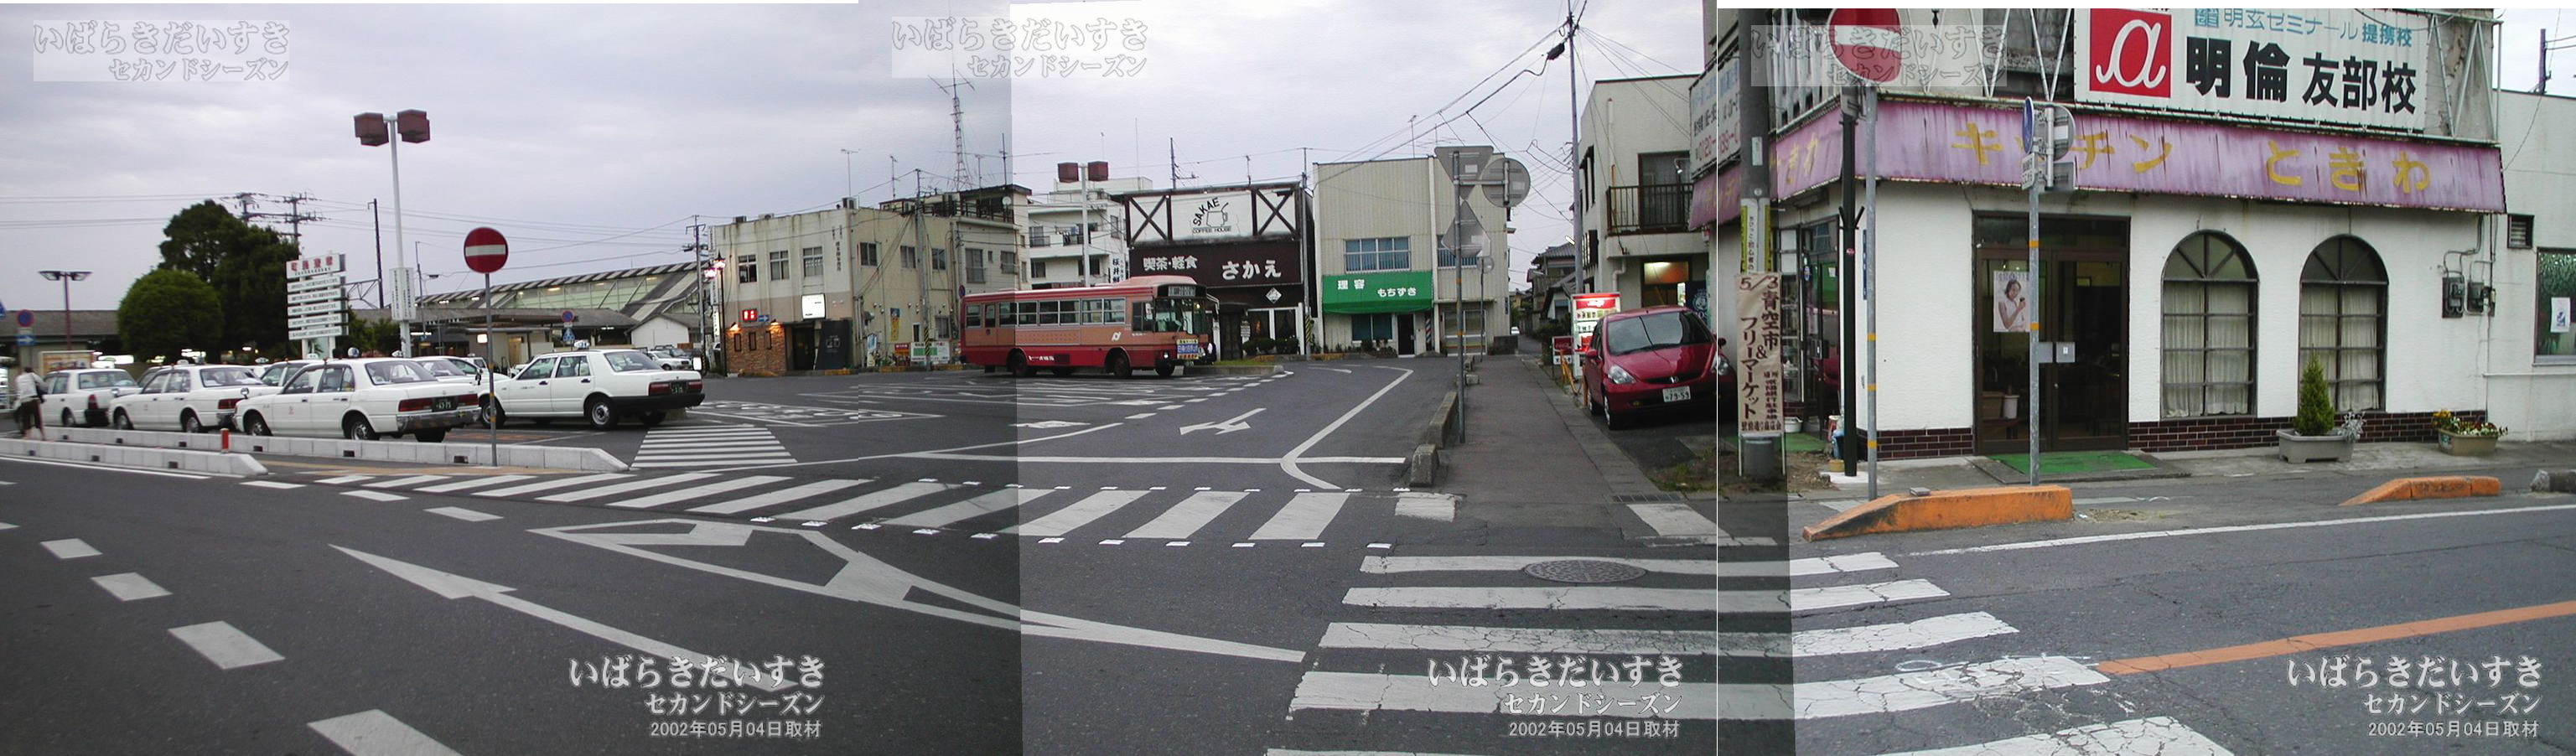 友部駅 駅前の風景 その2（2002年撮影）